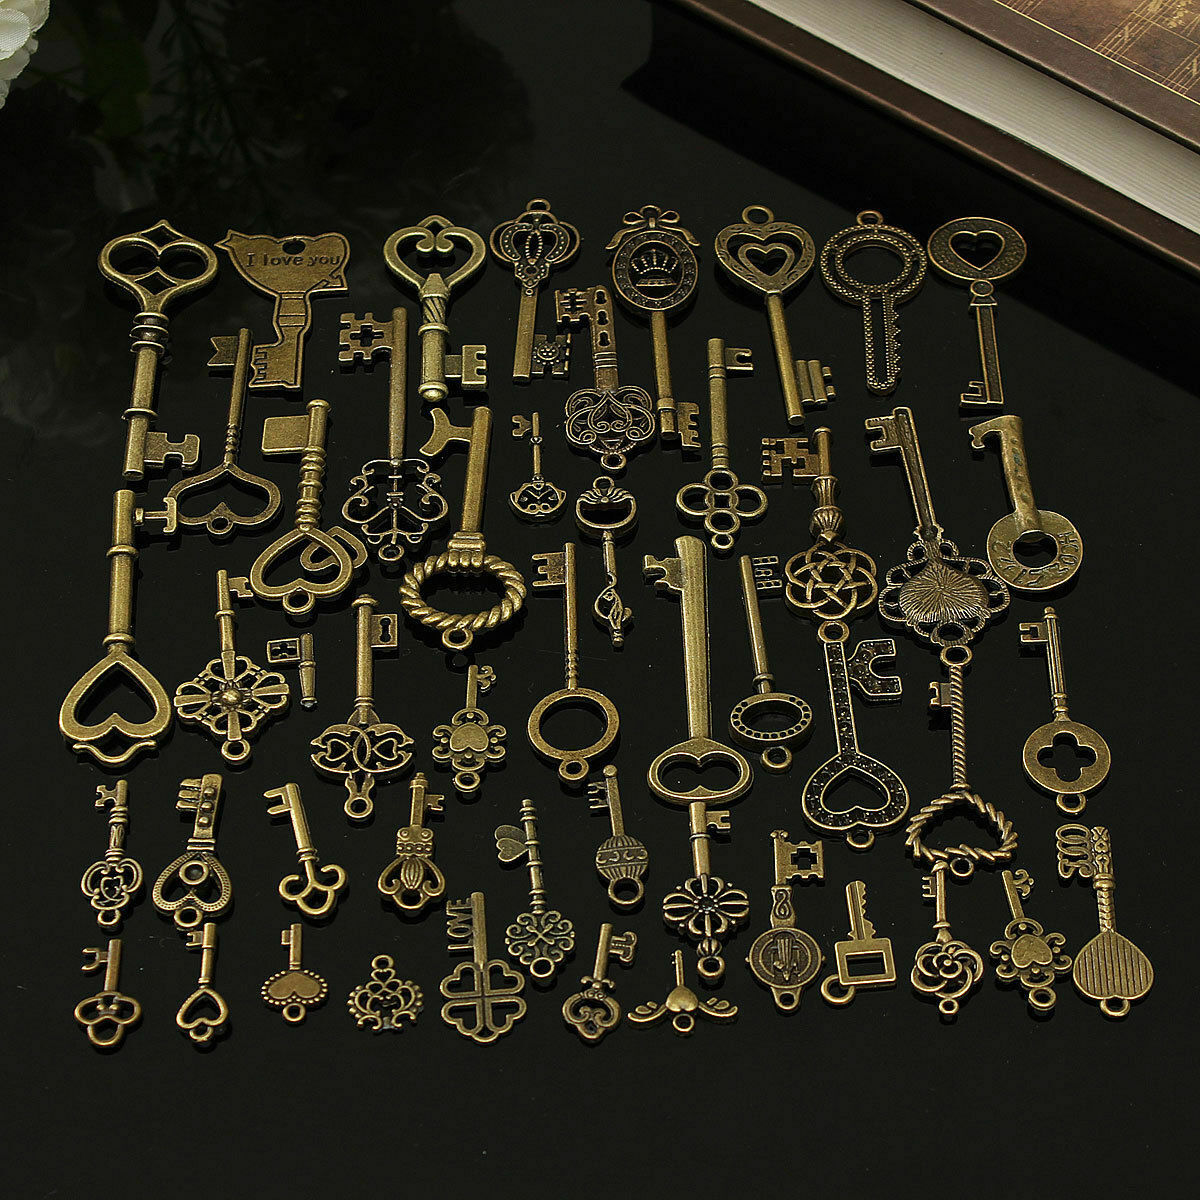 OTVIAP Vintage Keys,69pcs Assorted Antique Vintage Bronze Skeleton